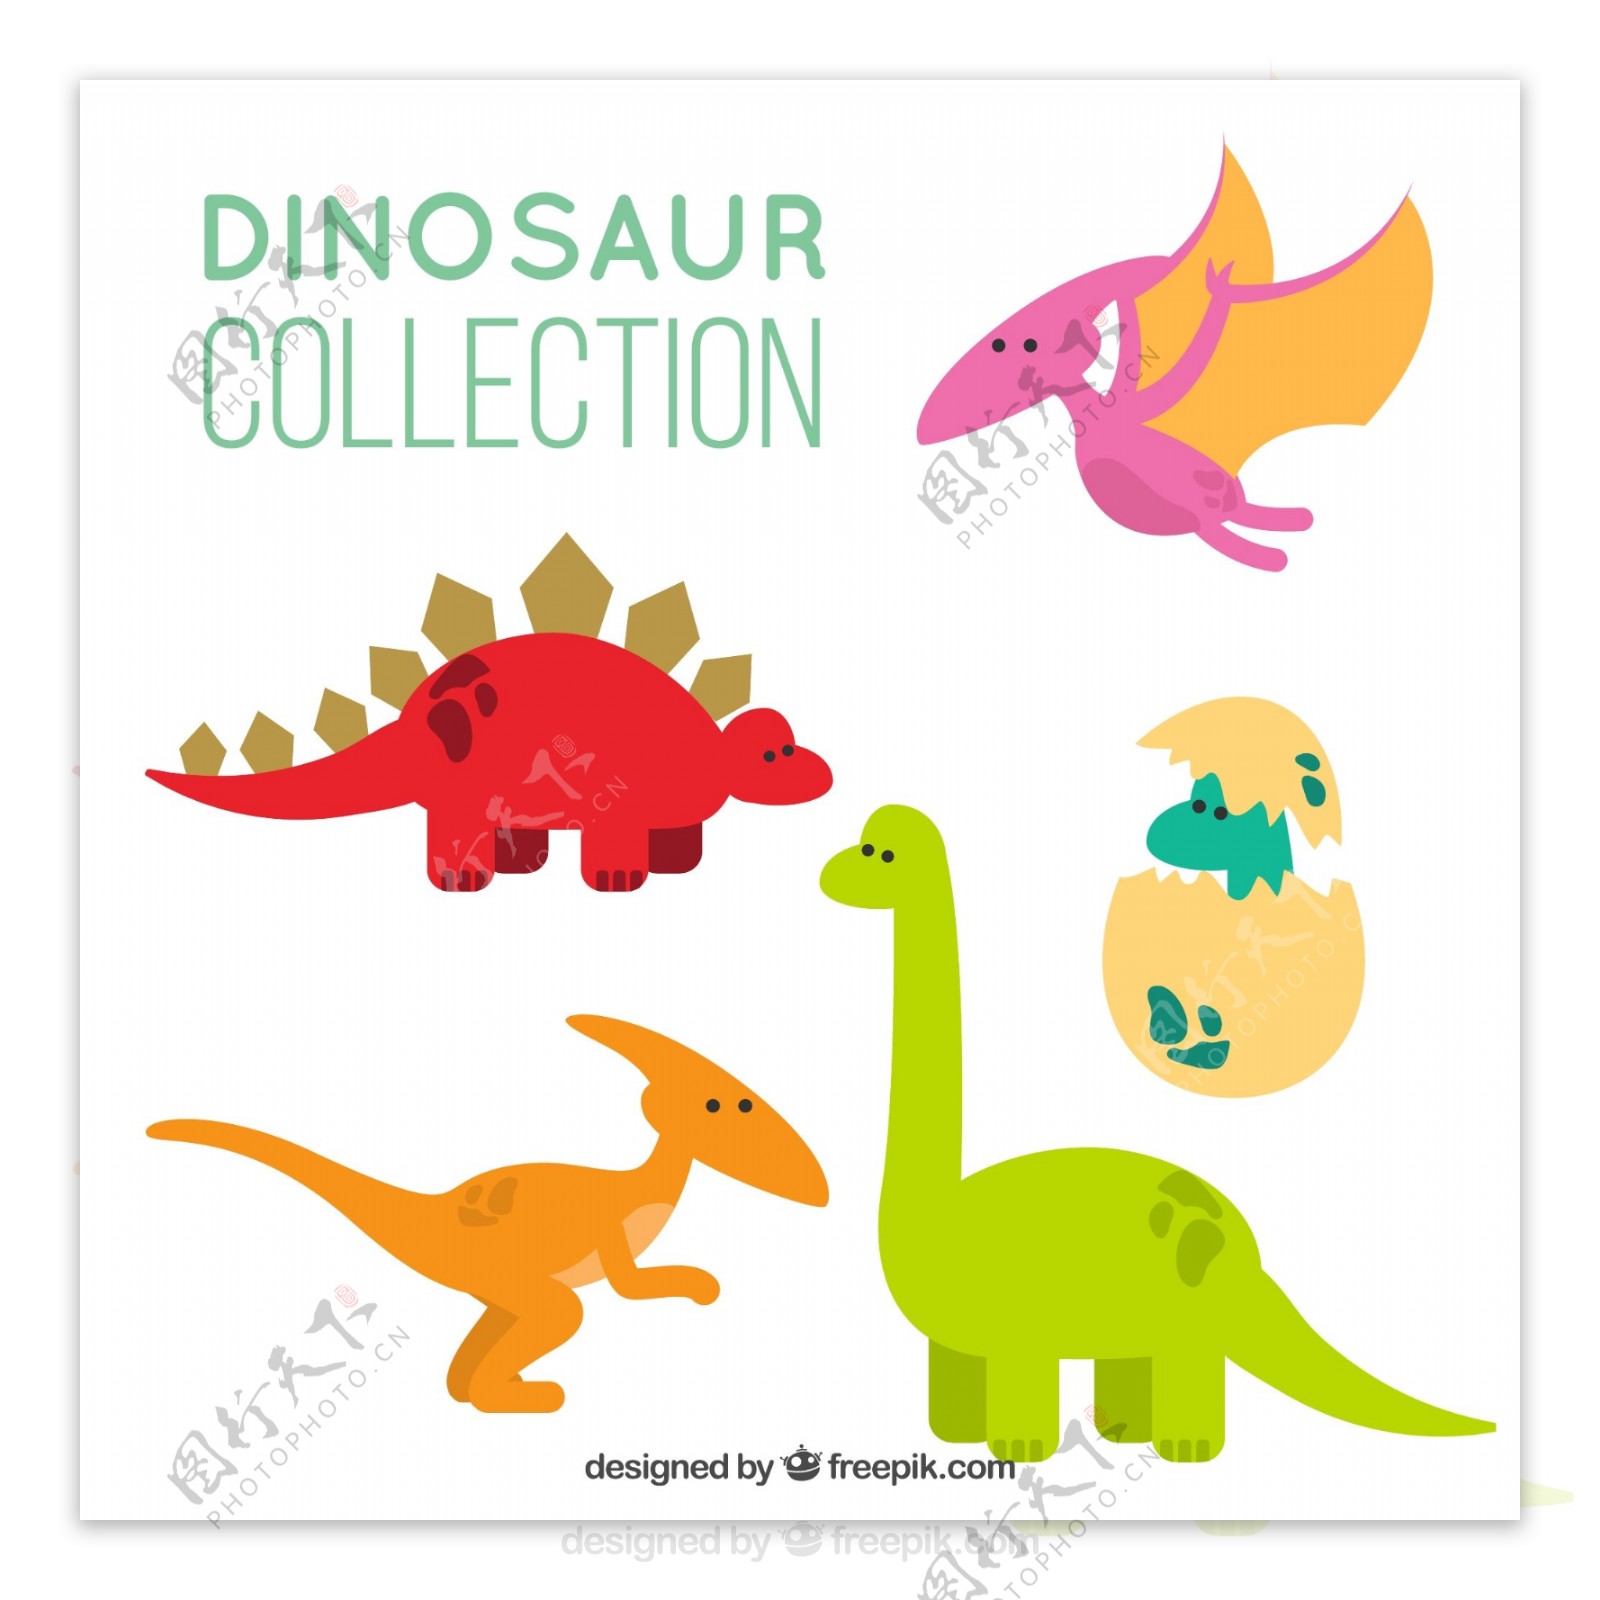 彩色恐龙和恐龙蛋矢量